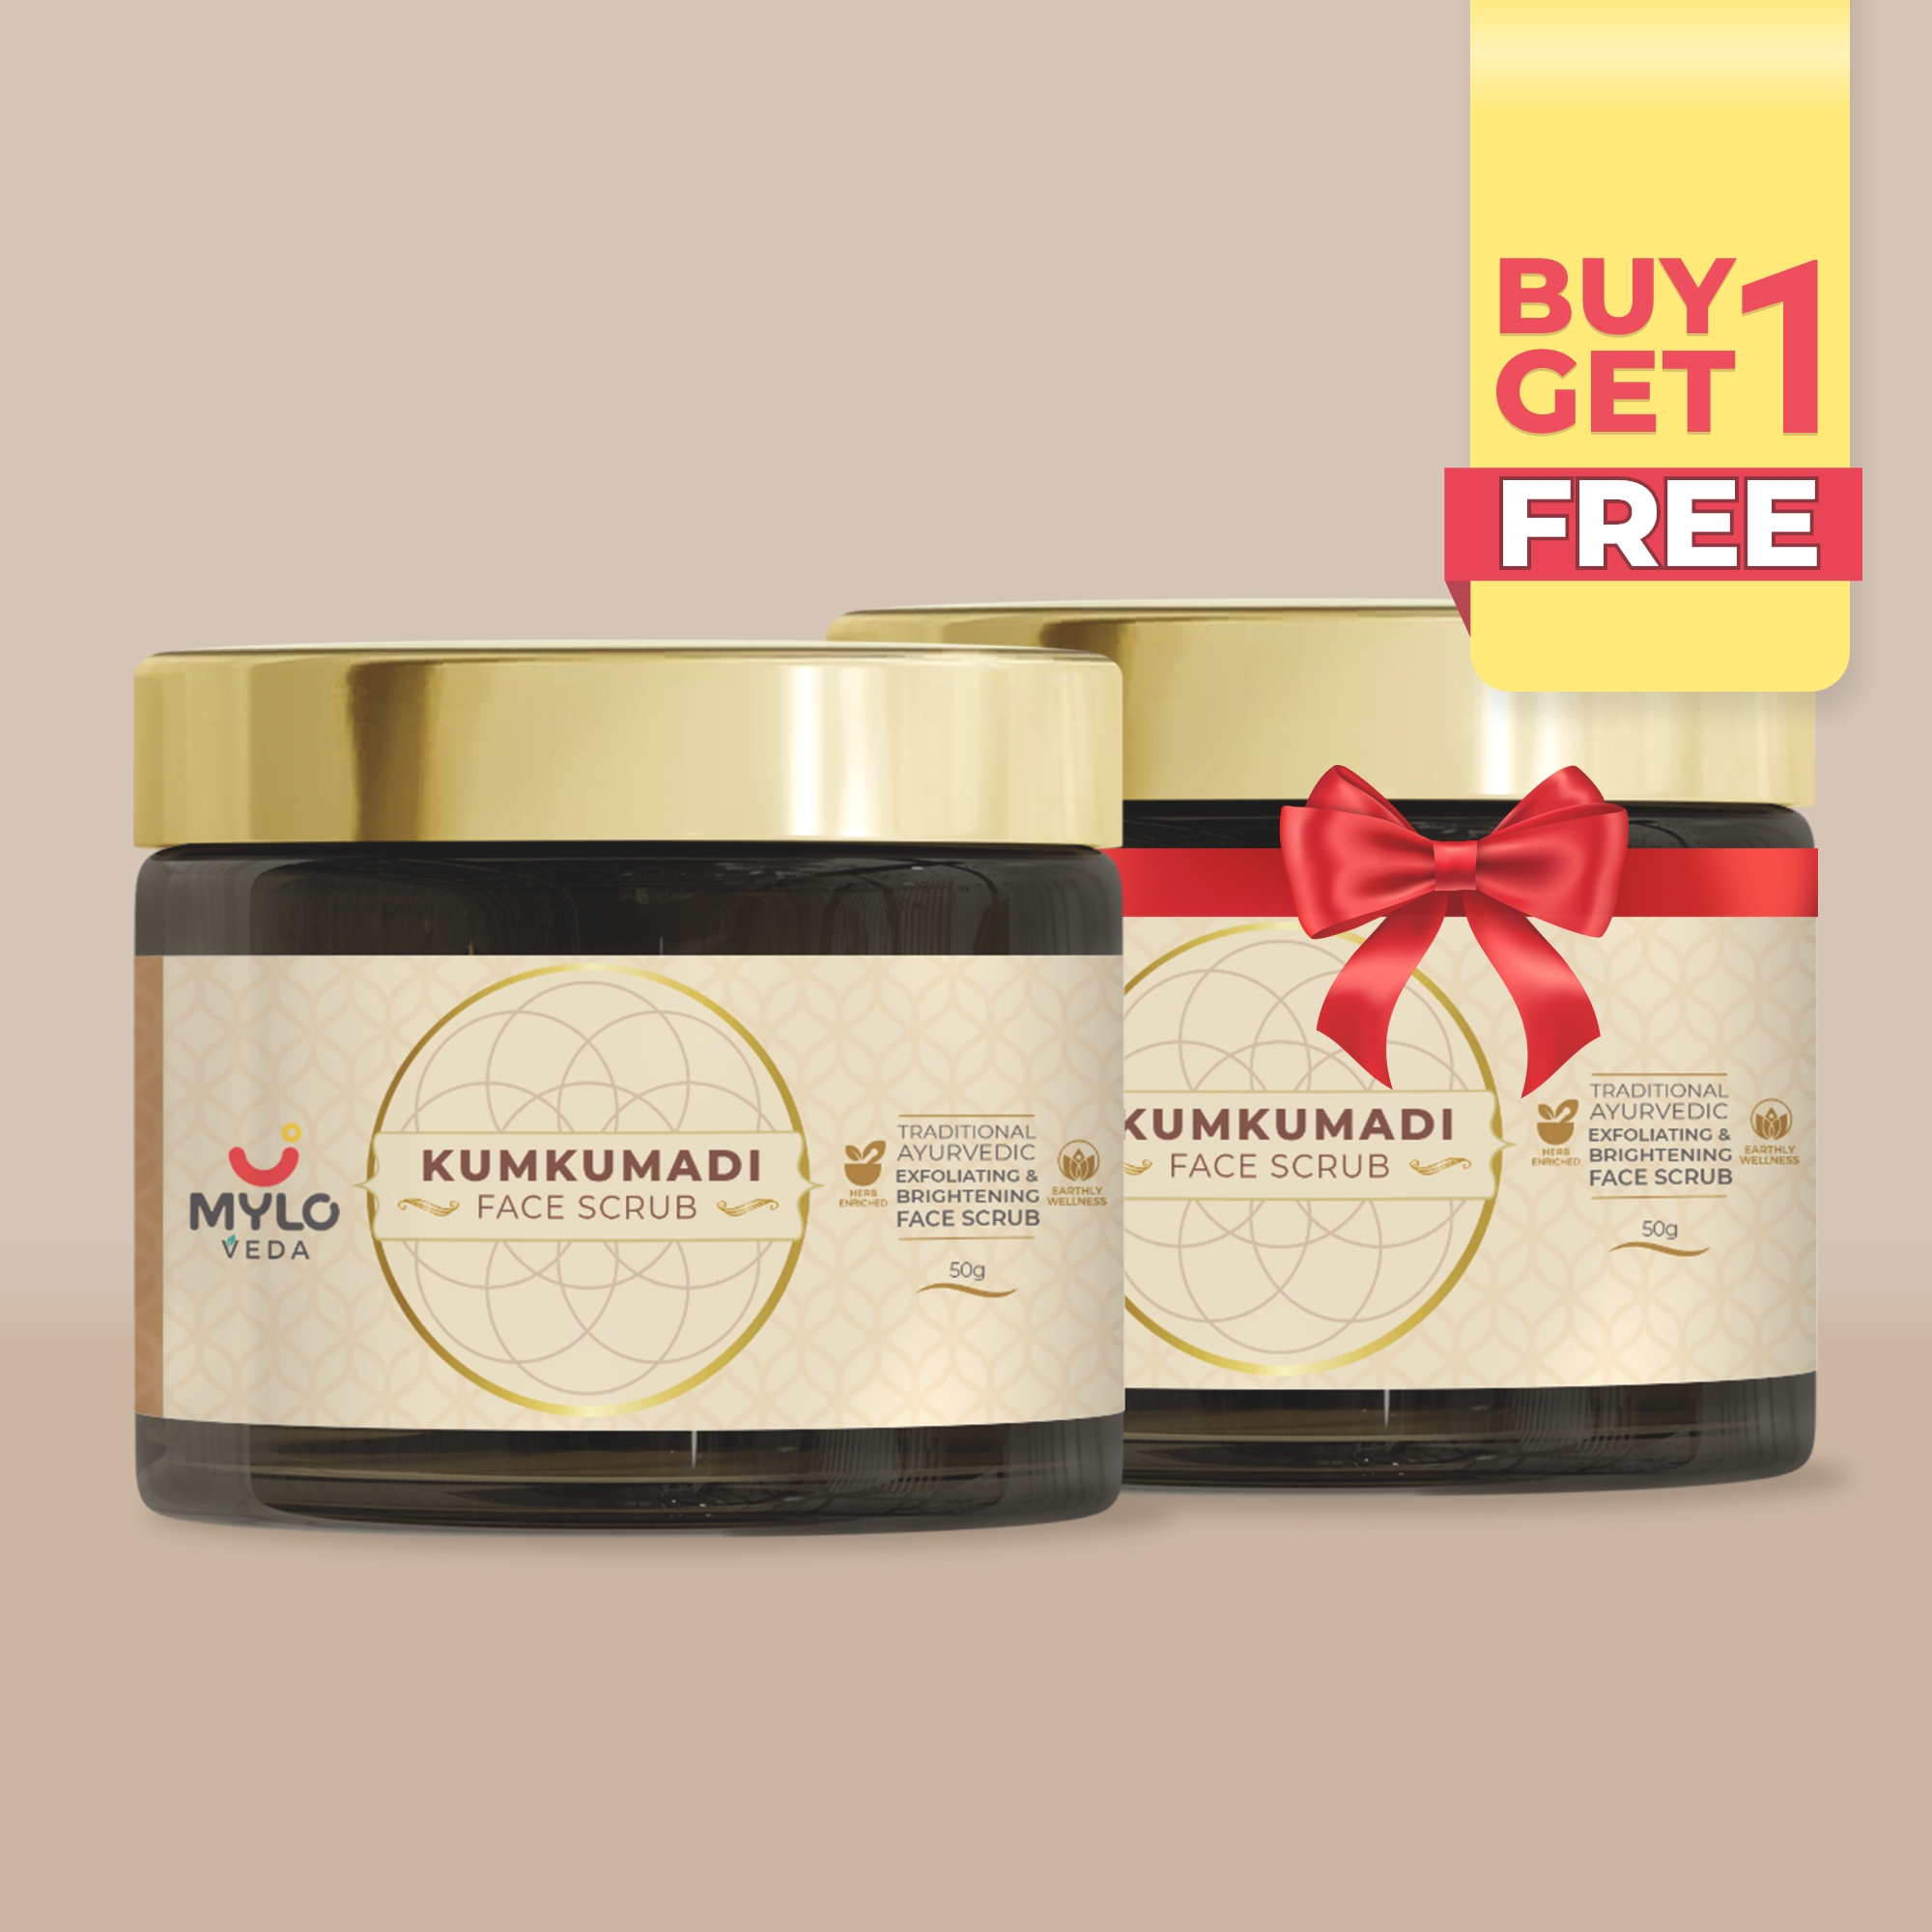 Kumkumadi Face Scrub (50 gm) - Buy 1 Get 1 FREE  